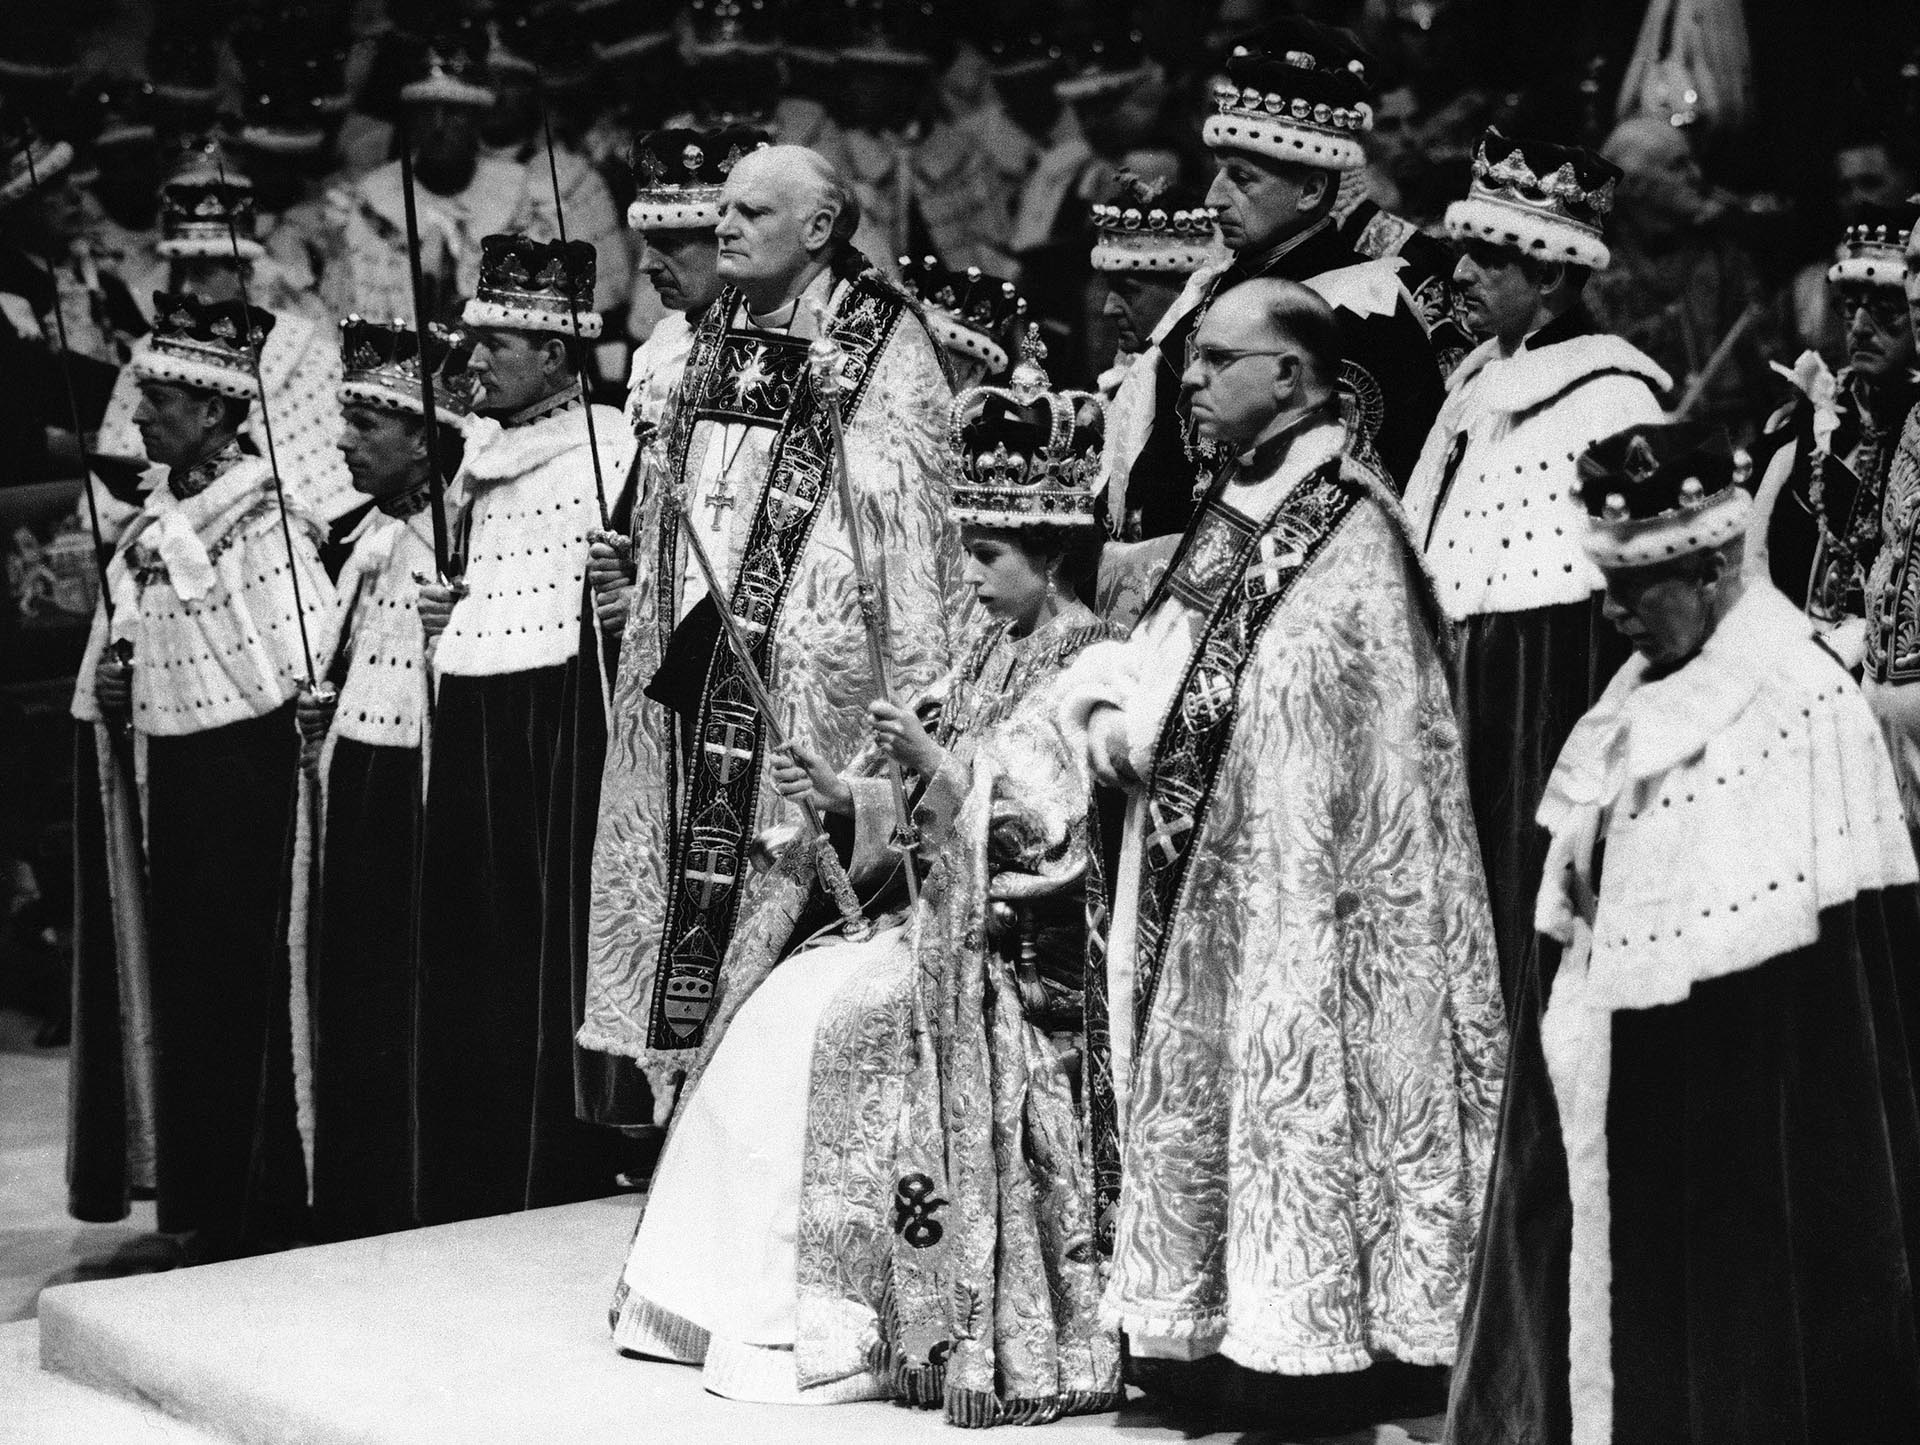 ARCHIVO - La reina Isabel II de Gran Bretaña es coronada Monarca de Gran Bretaña sosteniendo el Cetro Real, sentada en el trono, con la corona de San Eduardo, en la Abadía de Westminster, en Londres, el 2 de junio de 1953.  (Foto AP, Archivo)
